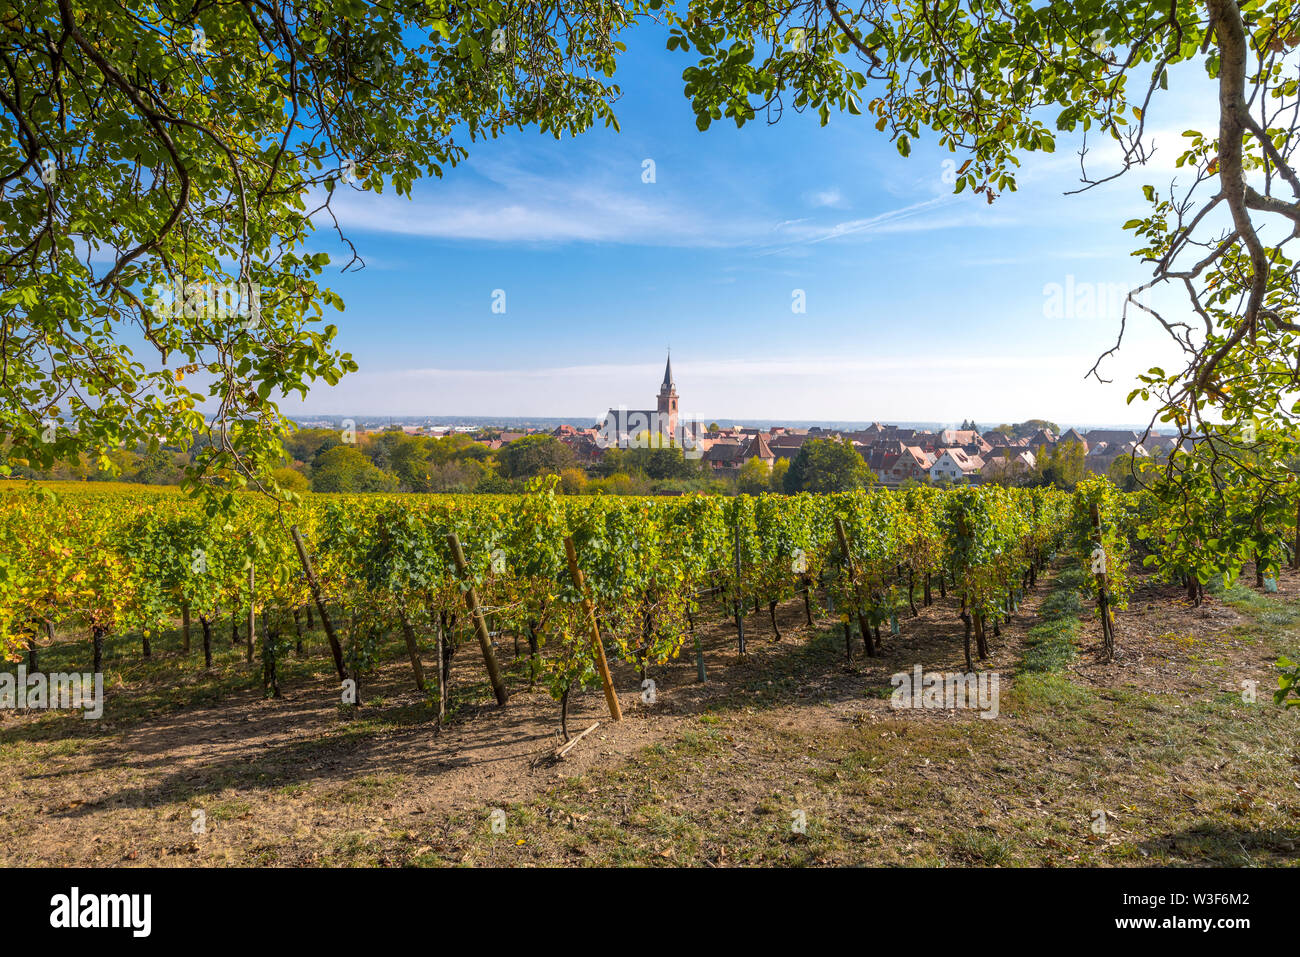 Vue idyllique sur le village de Bergheim, Alsace, France, paysage rural en vigne et noyer Banque D'Images